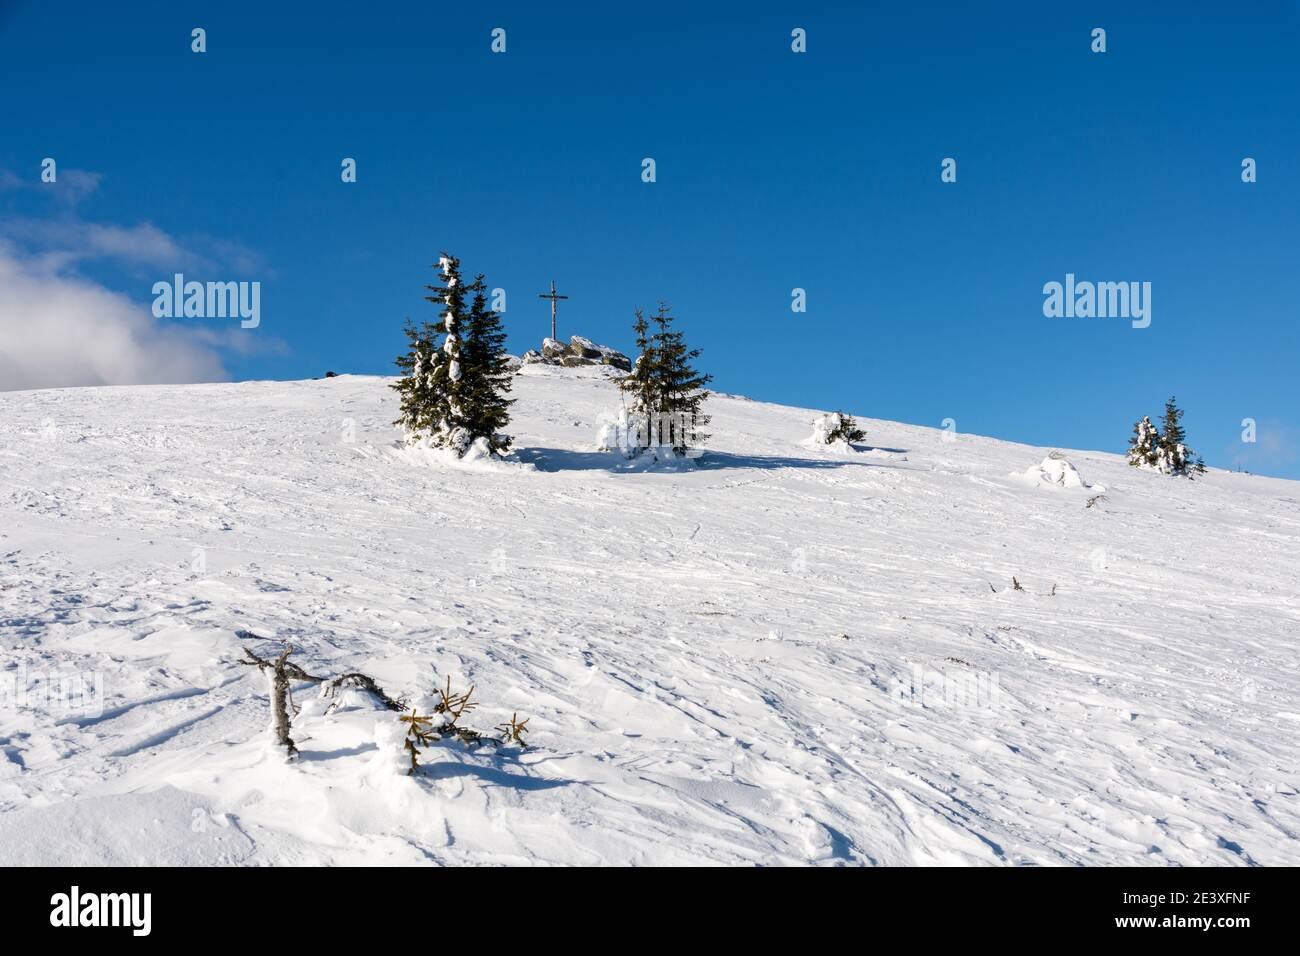 Seiner cross in Hirschegg, Austria, during winter Stock Photo